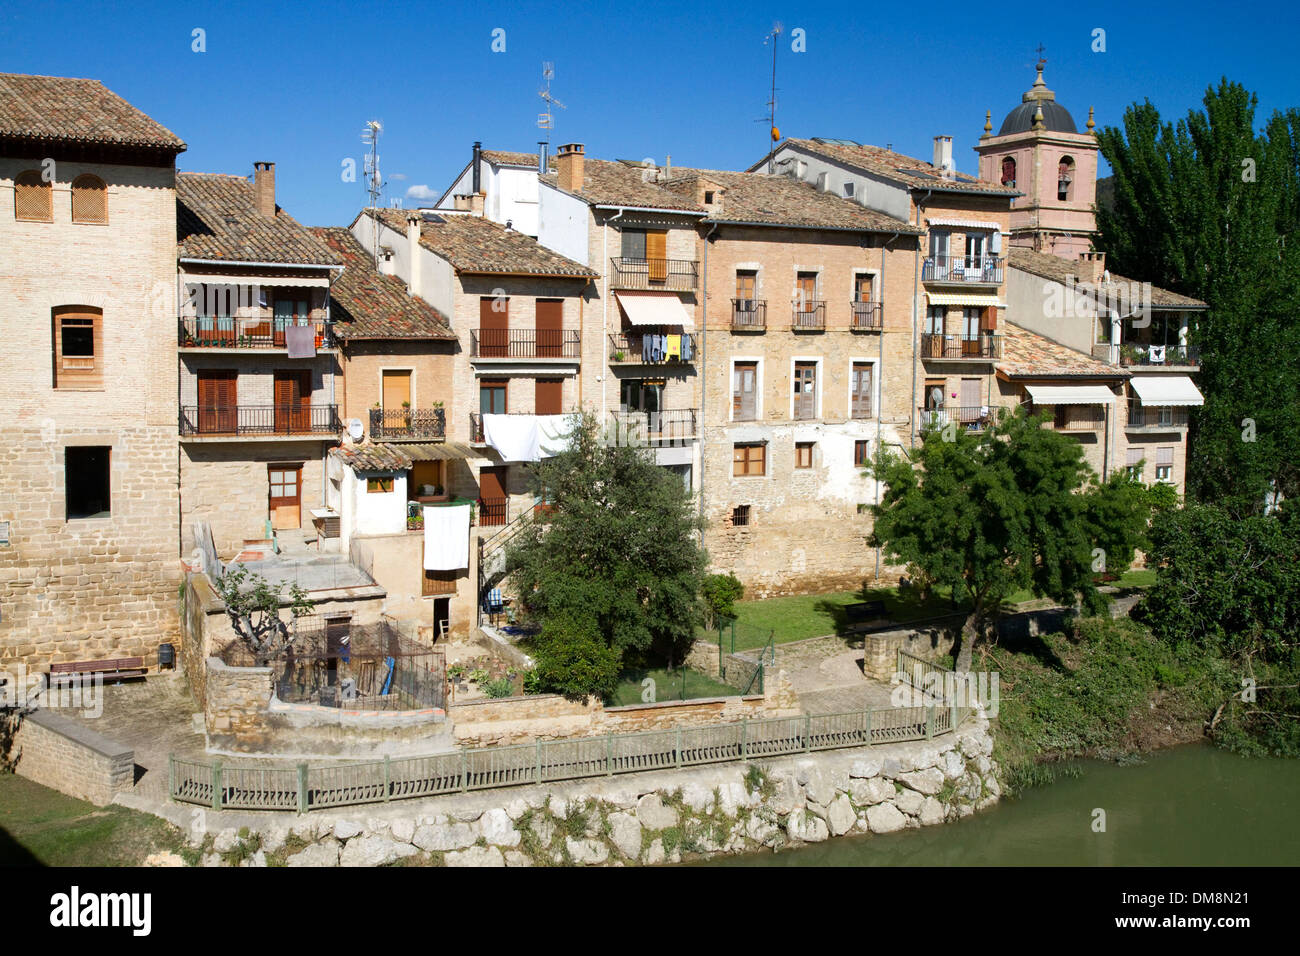 Puente la Reina est une ville basque le long du chemin de Saint-Jacques de Compostelle, Navarra, Espagne. Banque D'Images